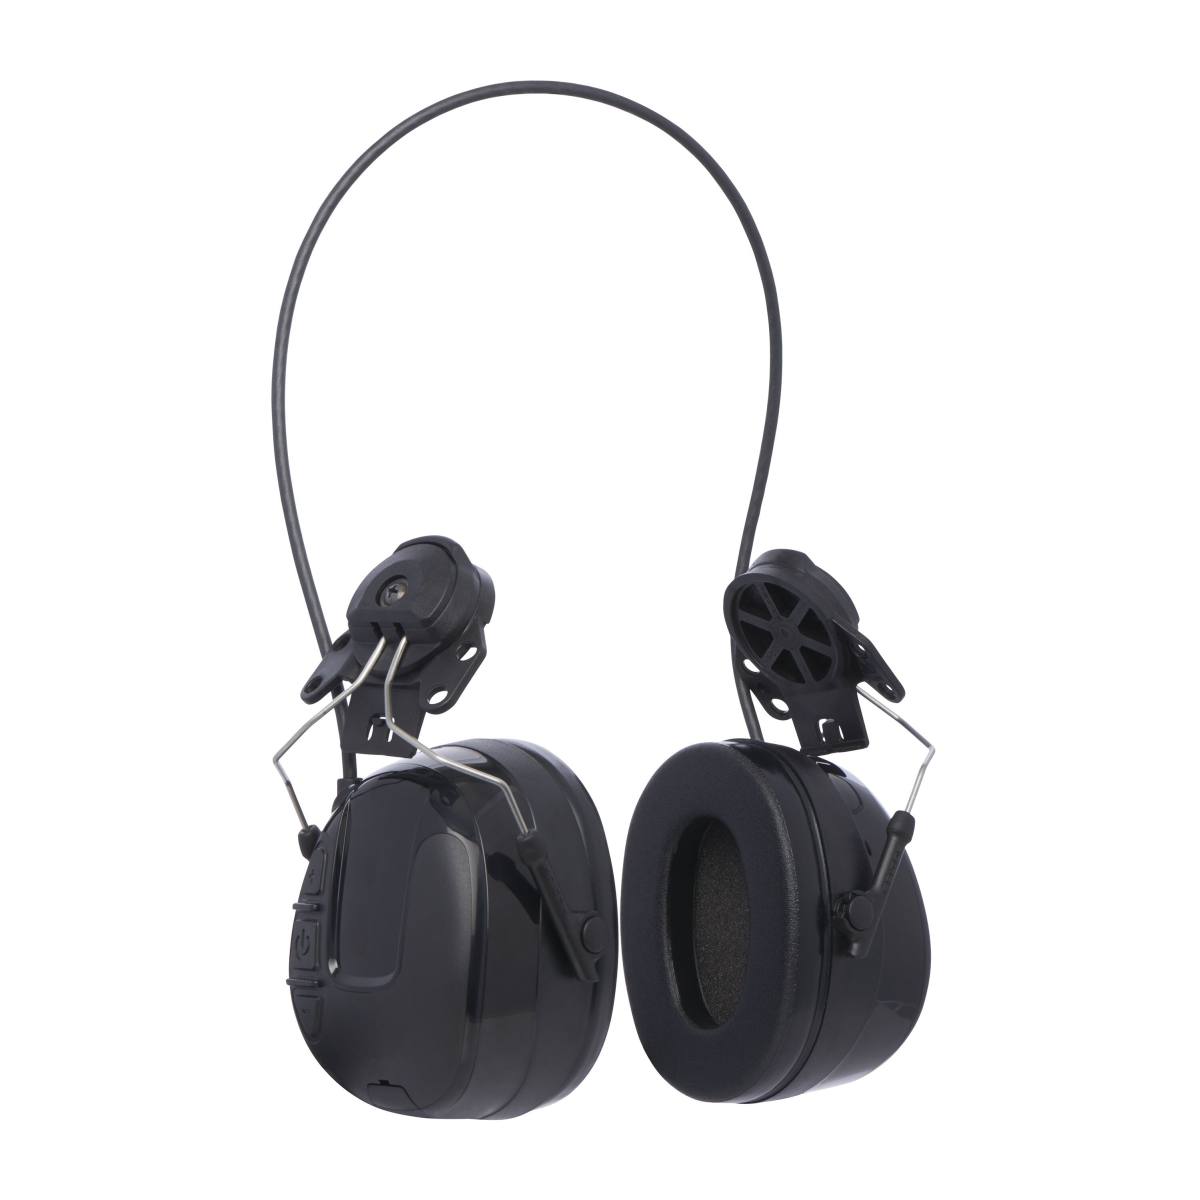 3M PELTOR WorkTunes Pro FM-radio headset met gehoorbescherming, helmbevestiging, zwart